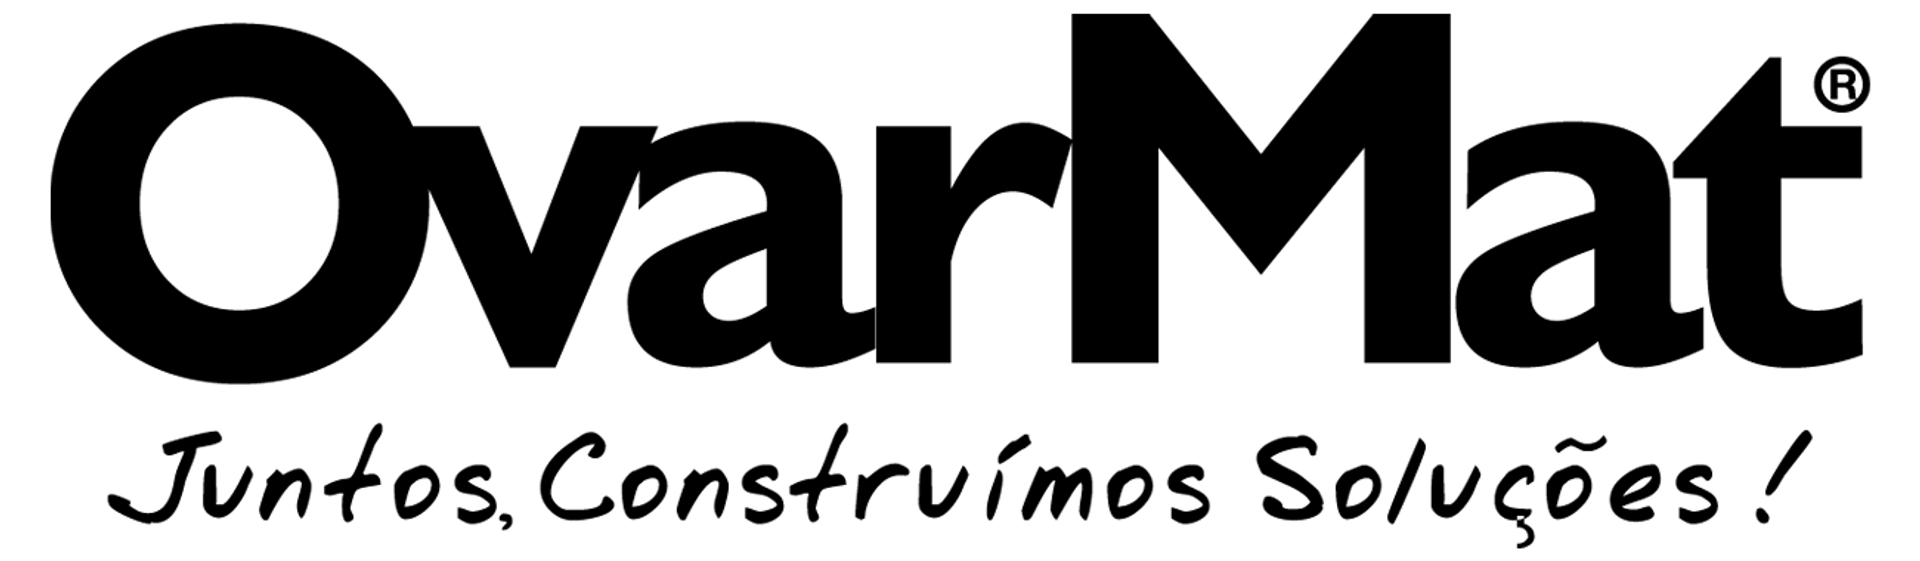 OVARMAT logo de folhetos